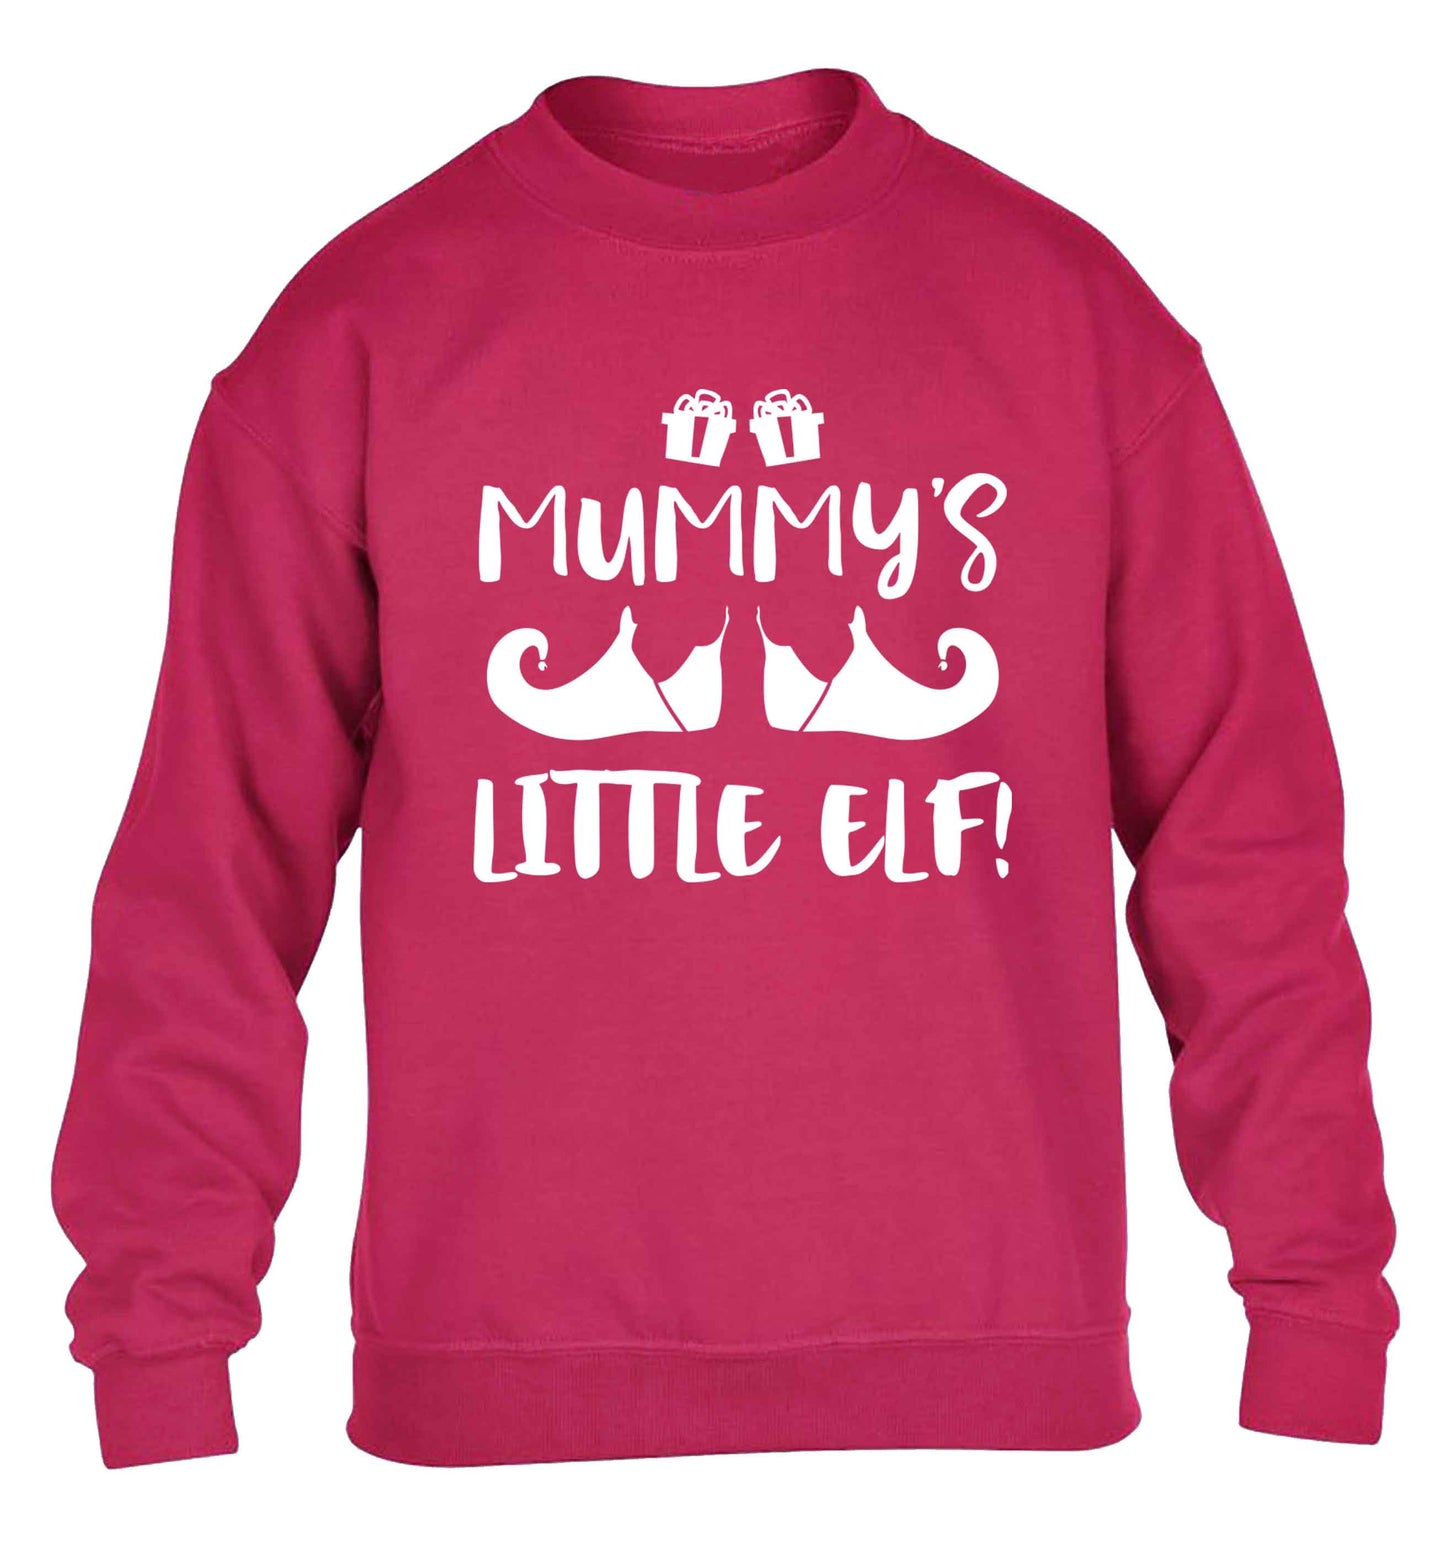 Mummy's little elf children's pink sweater 12-13 Years